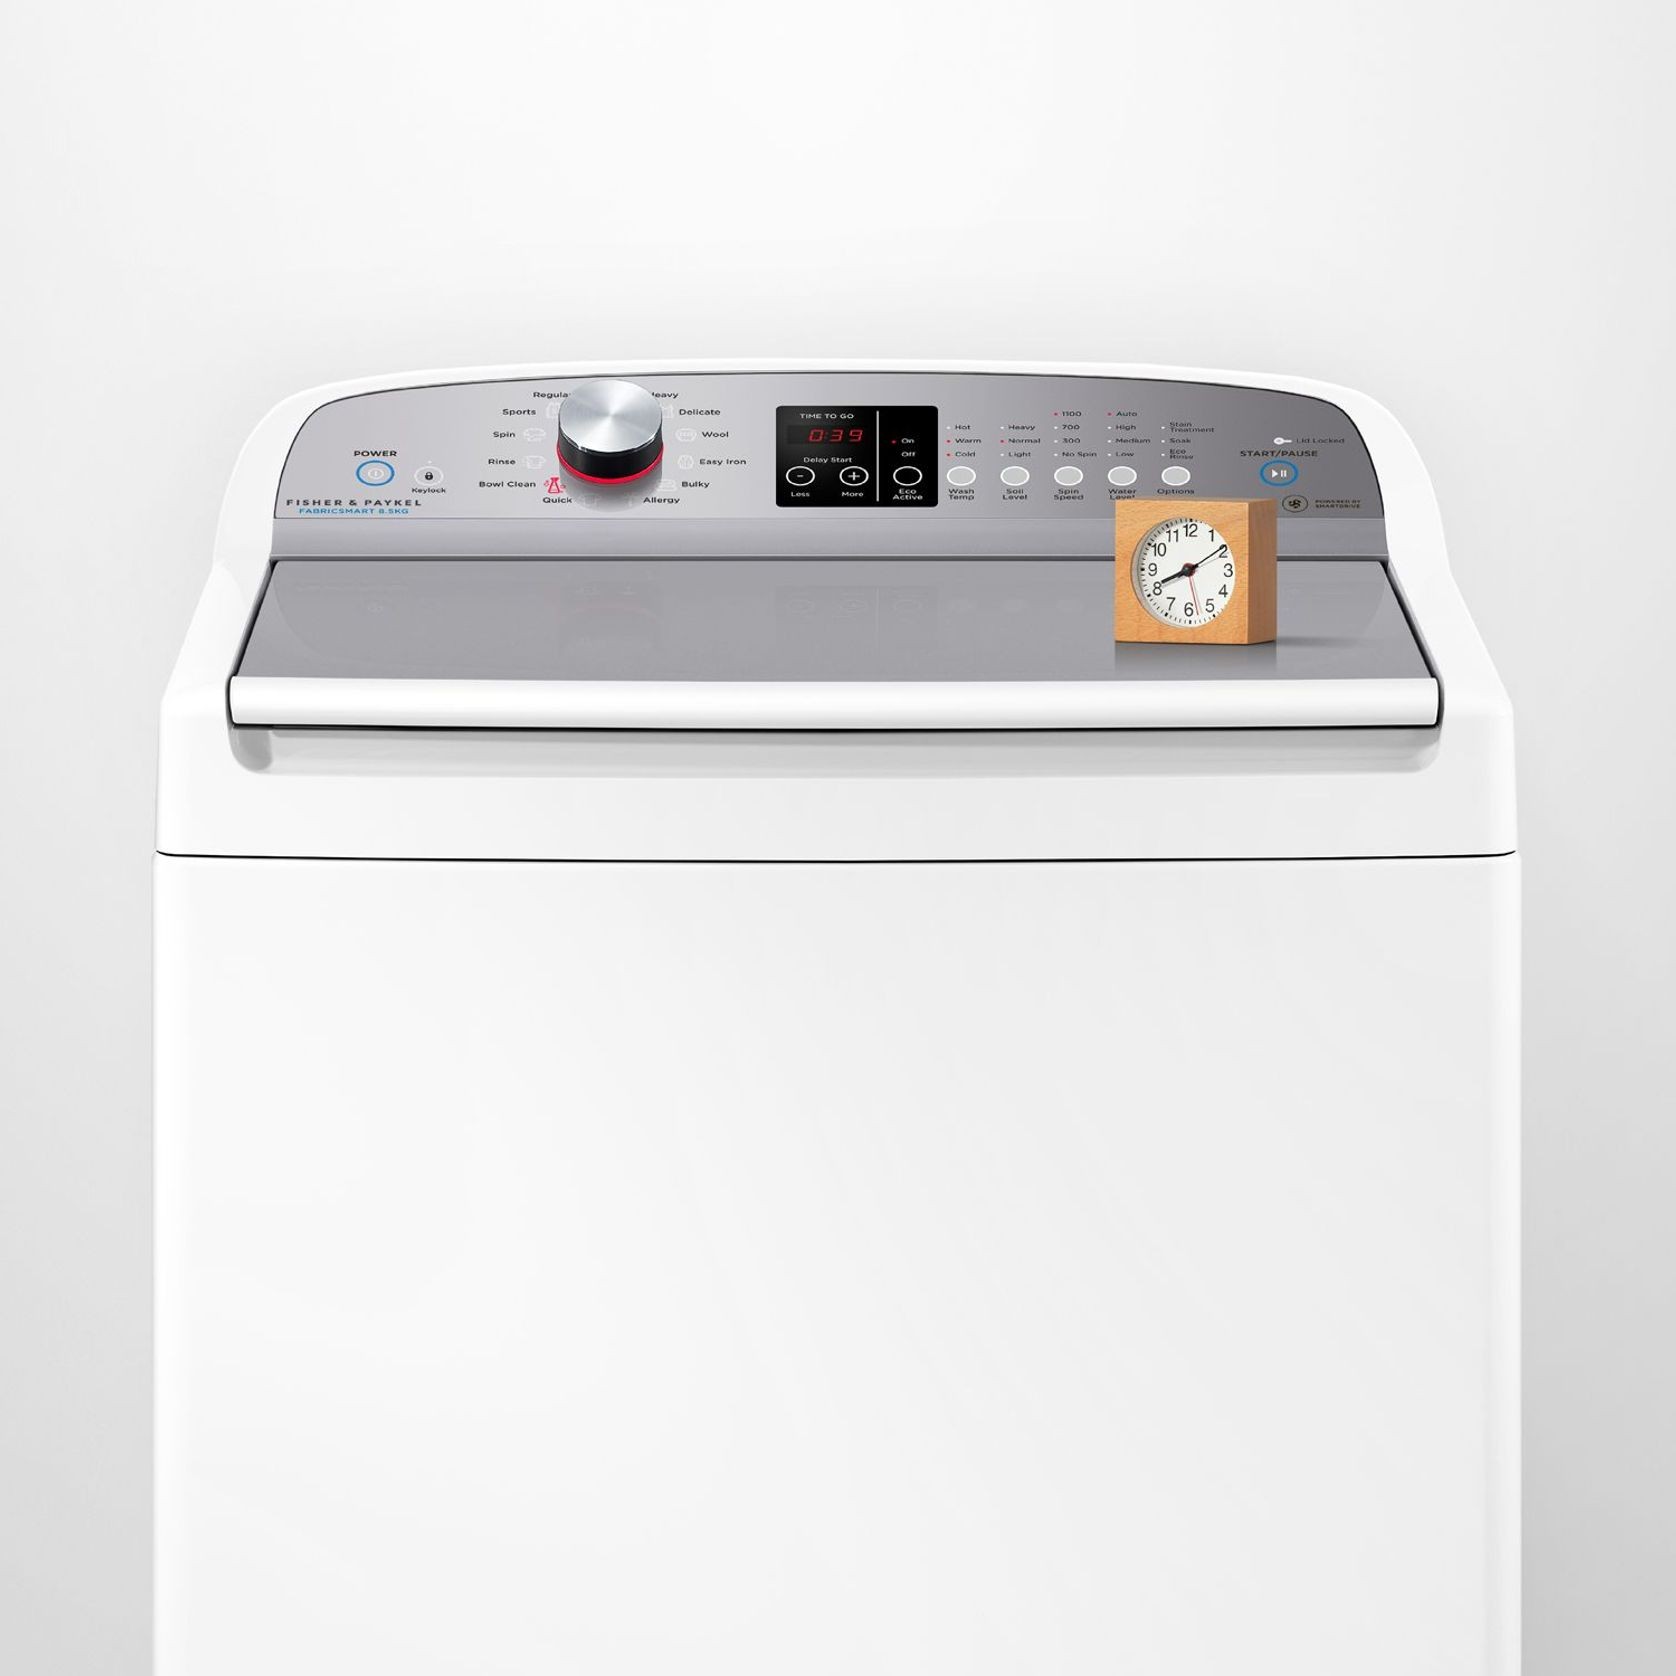 Top Loader Washing Machine, 8.5kg gallery detail image